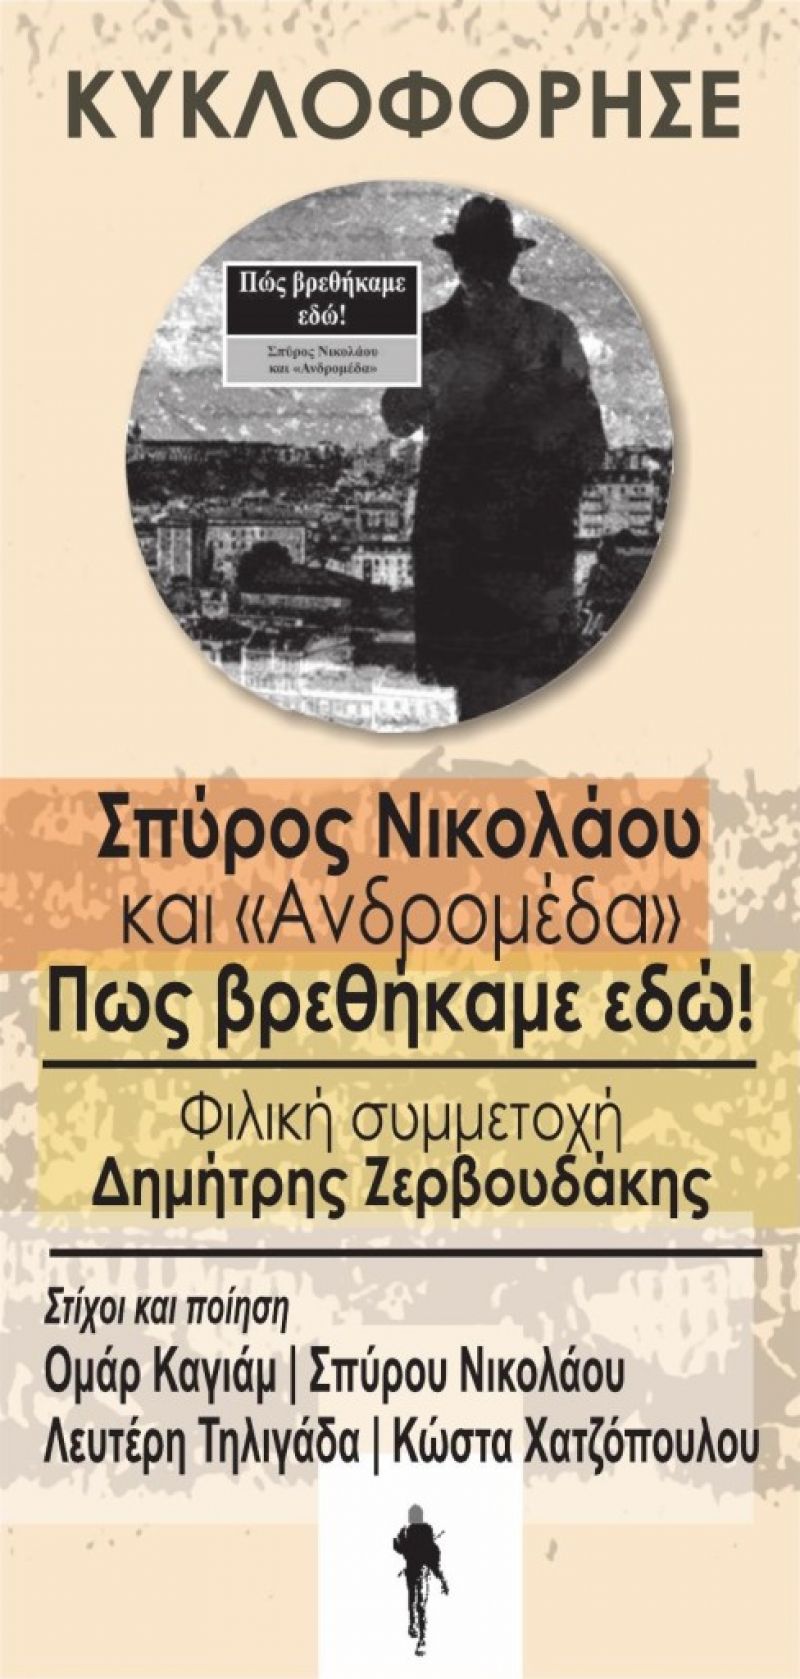 Πρώτο ταξίδι του Σπύρου Νικολάου και του Μουσικού Σχήματος Ανδρομέδα στην Ελληνική Δισκογραφία